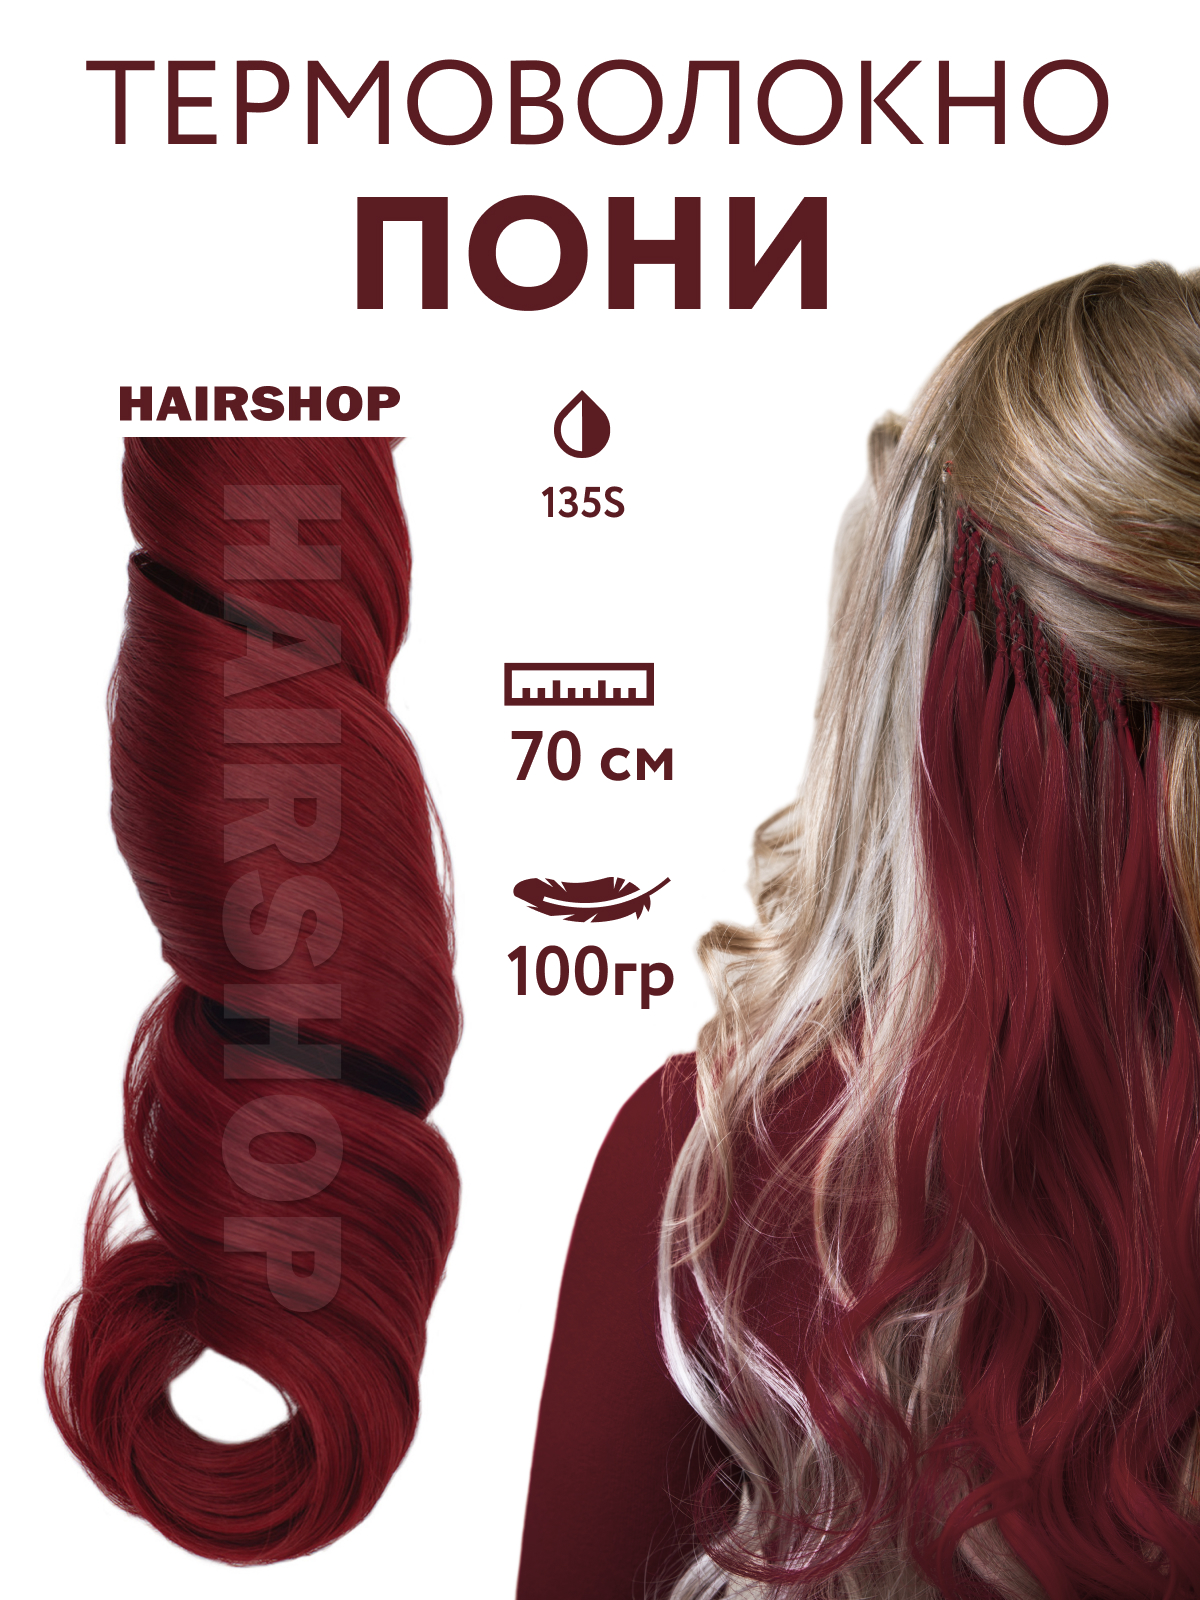 Канекалон Hairshop Пони HairUp для точечного афронаращивания 135-1 Красно-коричневый 1,4м пенал тубус для кистей мягкий 355 х 65 мм 7к37 кожзам принт рептилия глянцевый коричневый